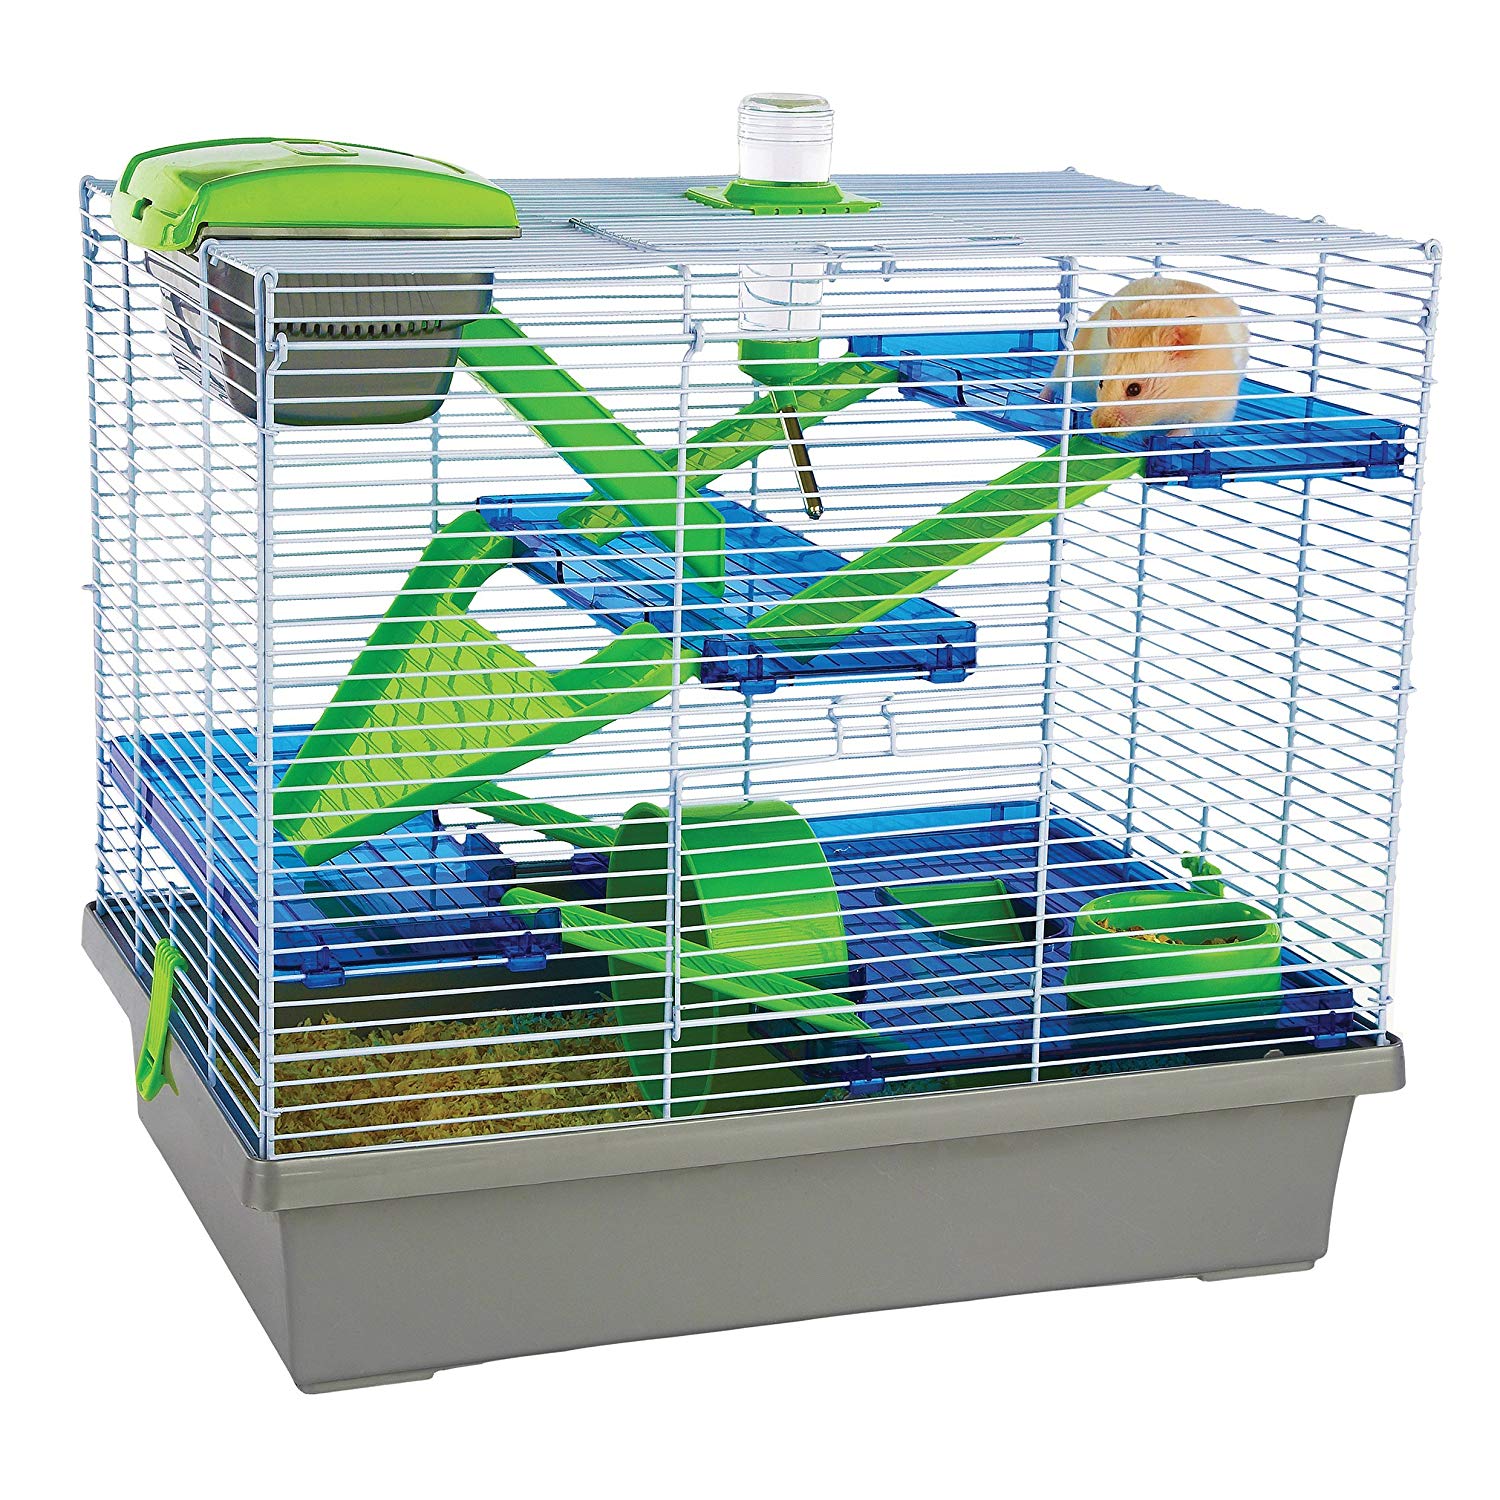 Dead R. reccomend Ferplast duna fun hamster cage review